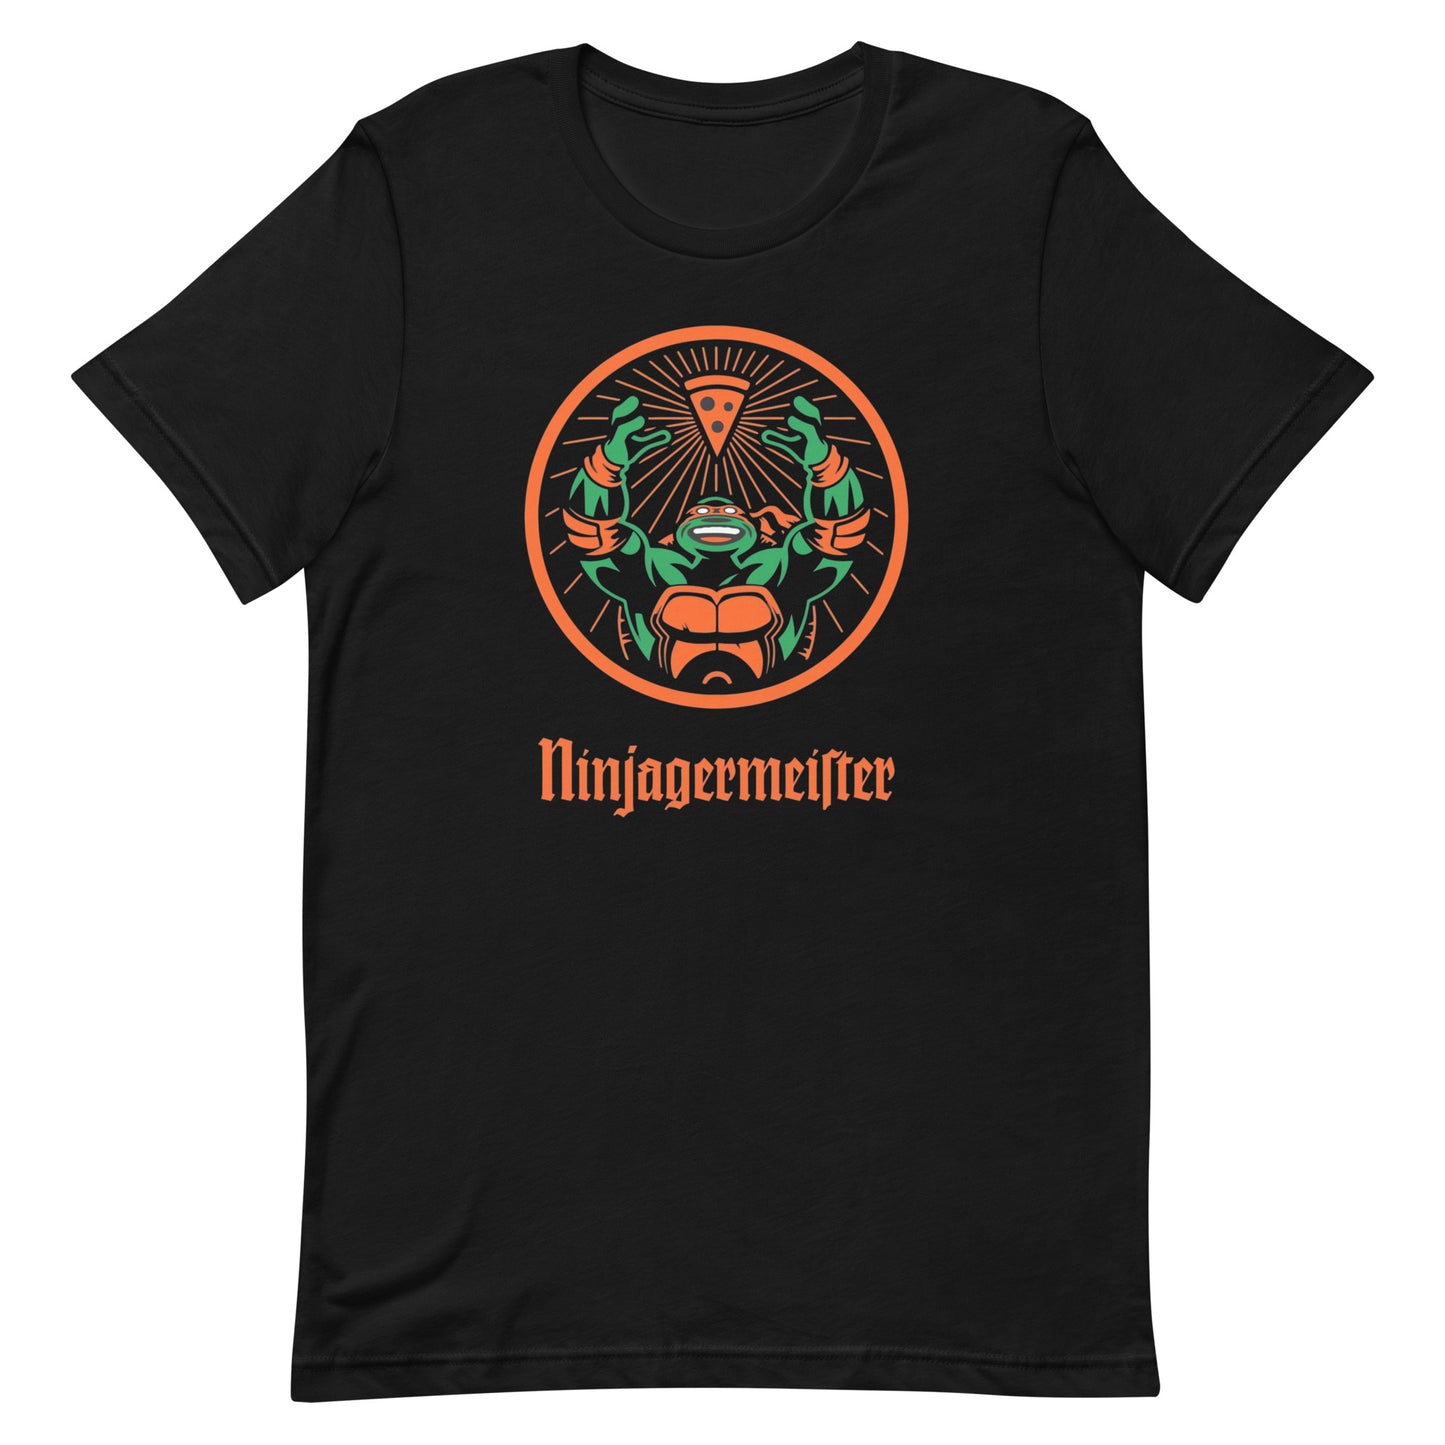 ¡Compra el mejor merchandising en Superstar! Encuentra diseños únicos y de alta calidad, Playera NinJagermeister